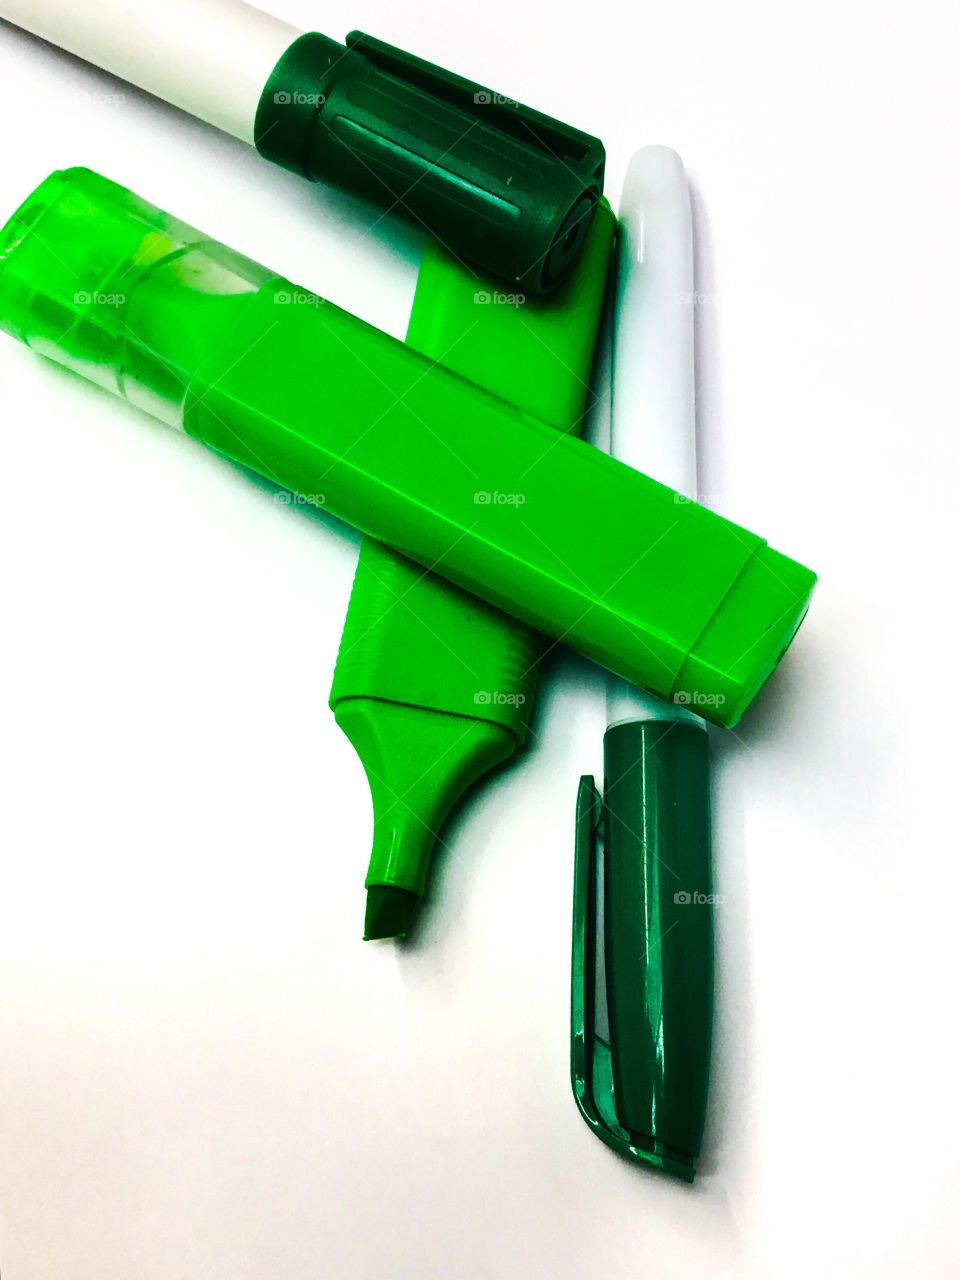 Green pens